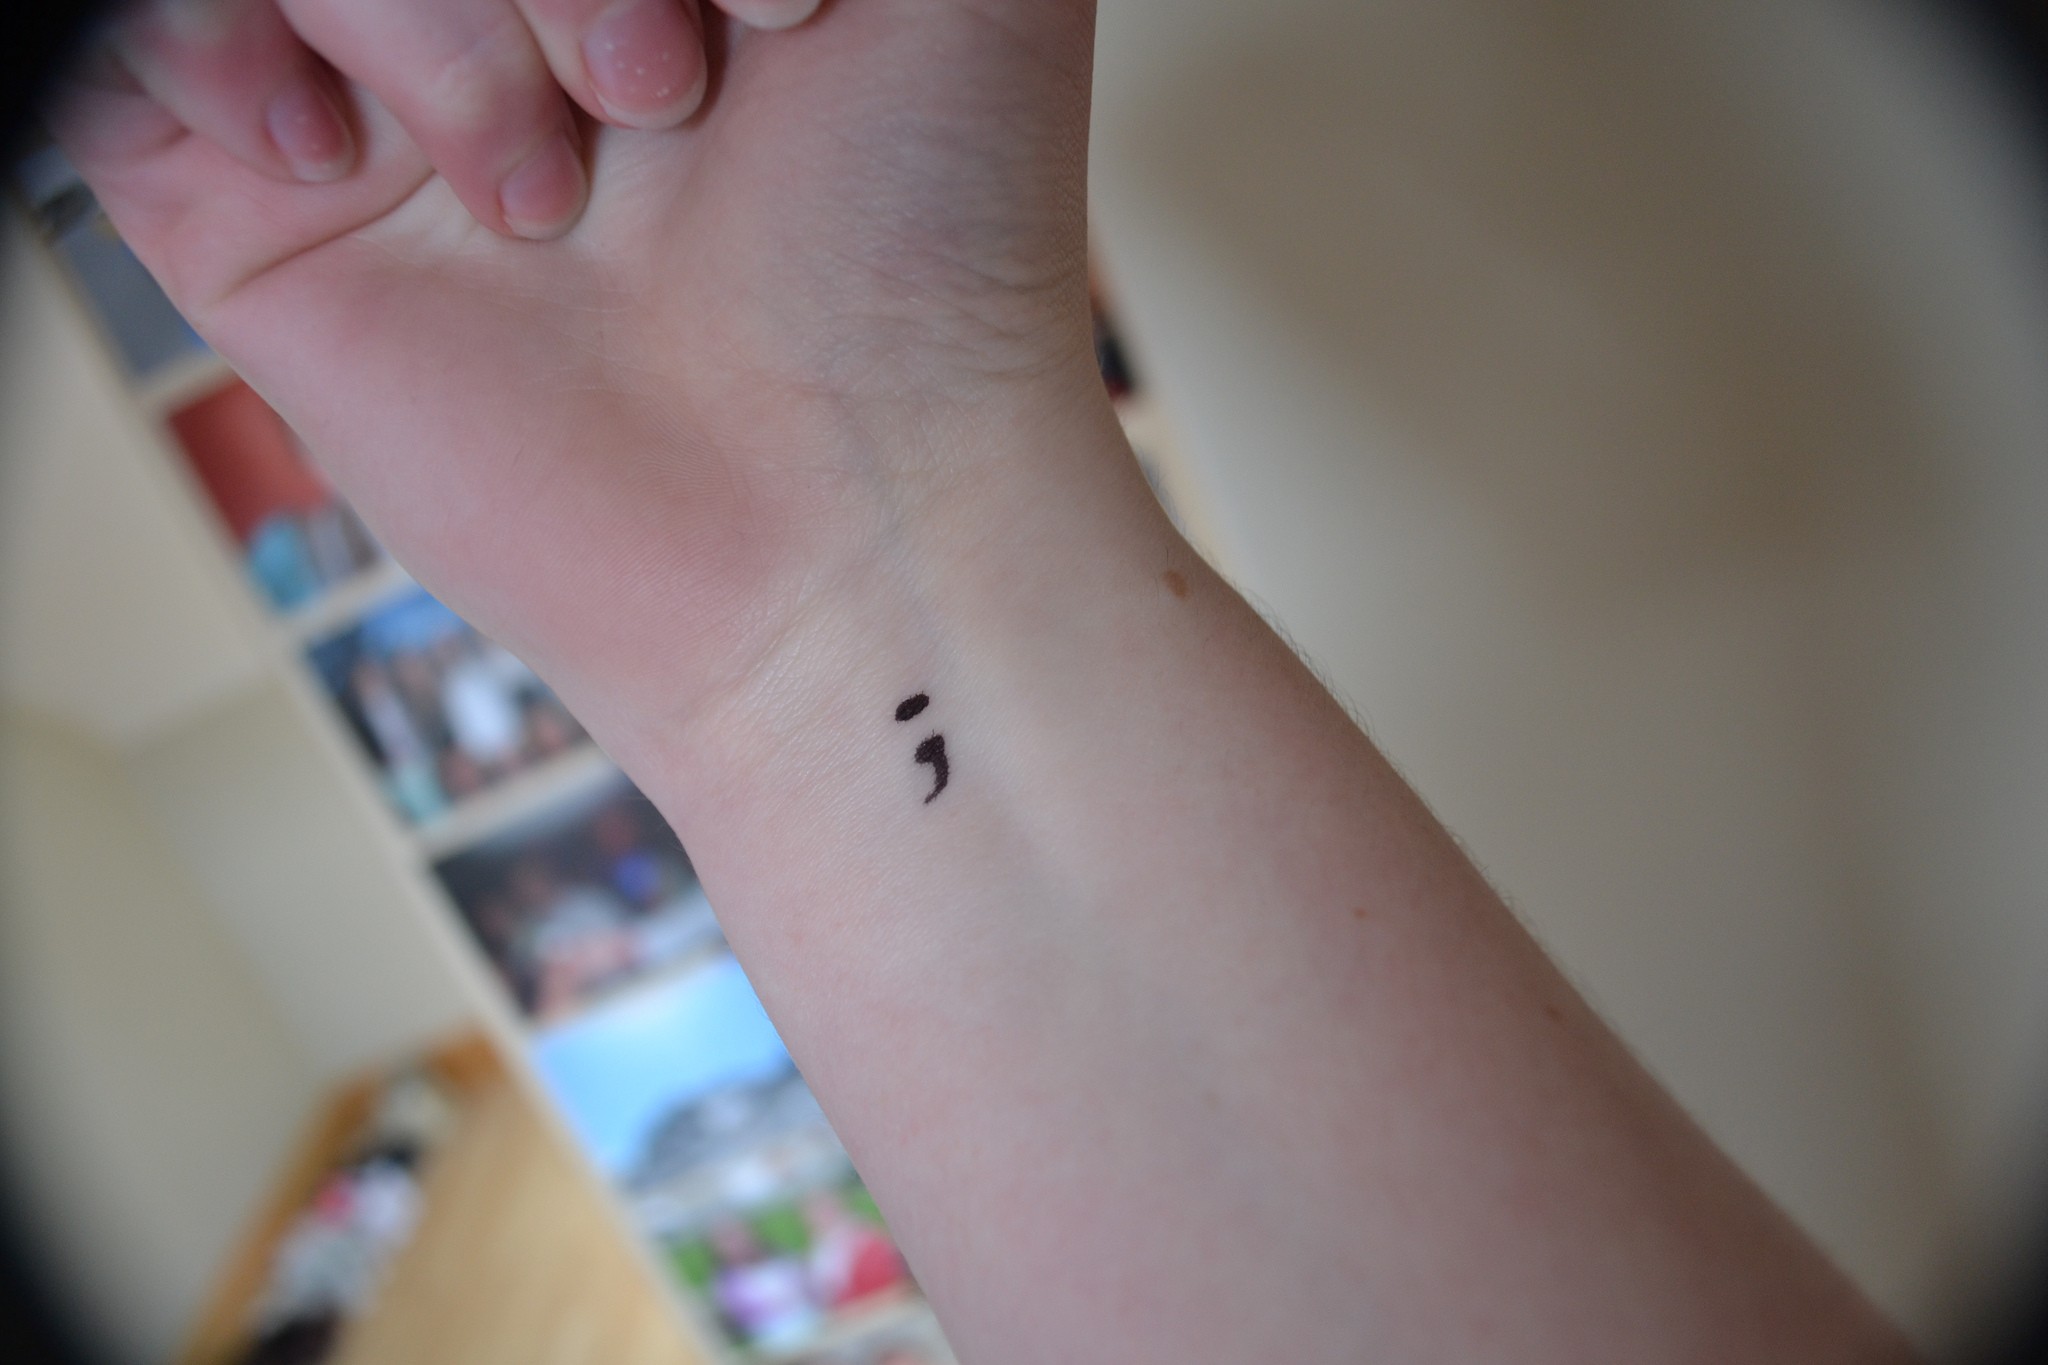 tatuagem de ponto e vírgula (Foto: Kate Elizabeth / flickr / creative commons)